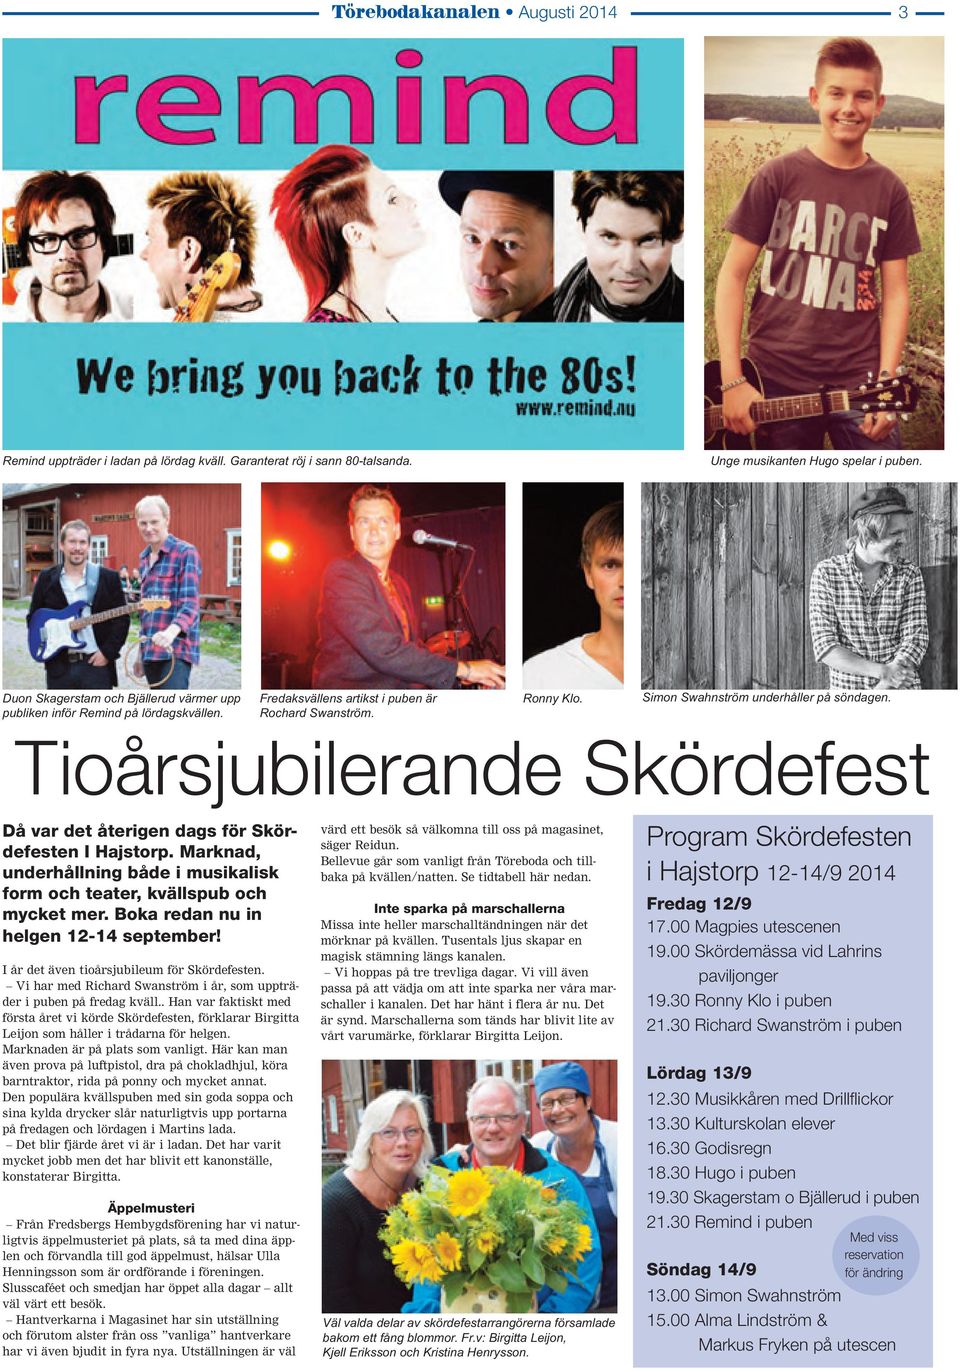 Tioårsjubilerande Skördefest Då var det återigen dags för Skördefesten I Hajstorp. Marknad, underhållning både i musikalisk form och teater, kvällspub och mycket mer.